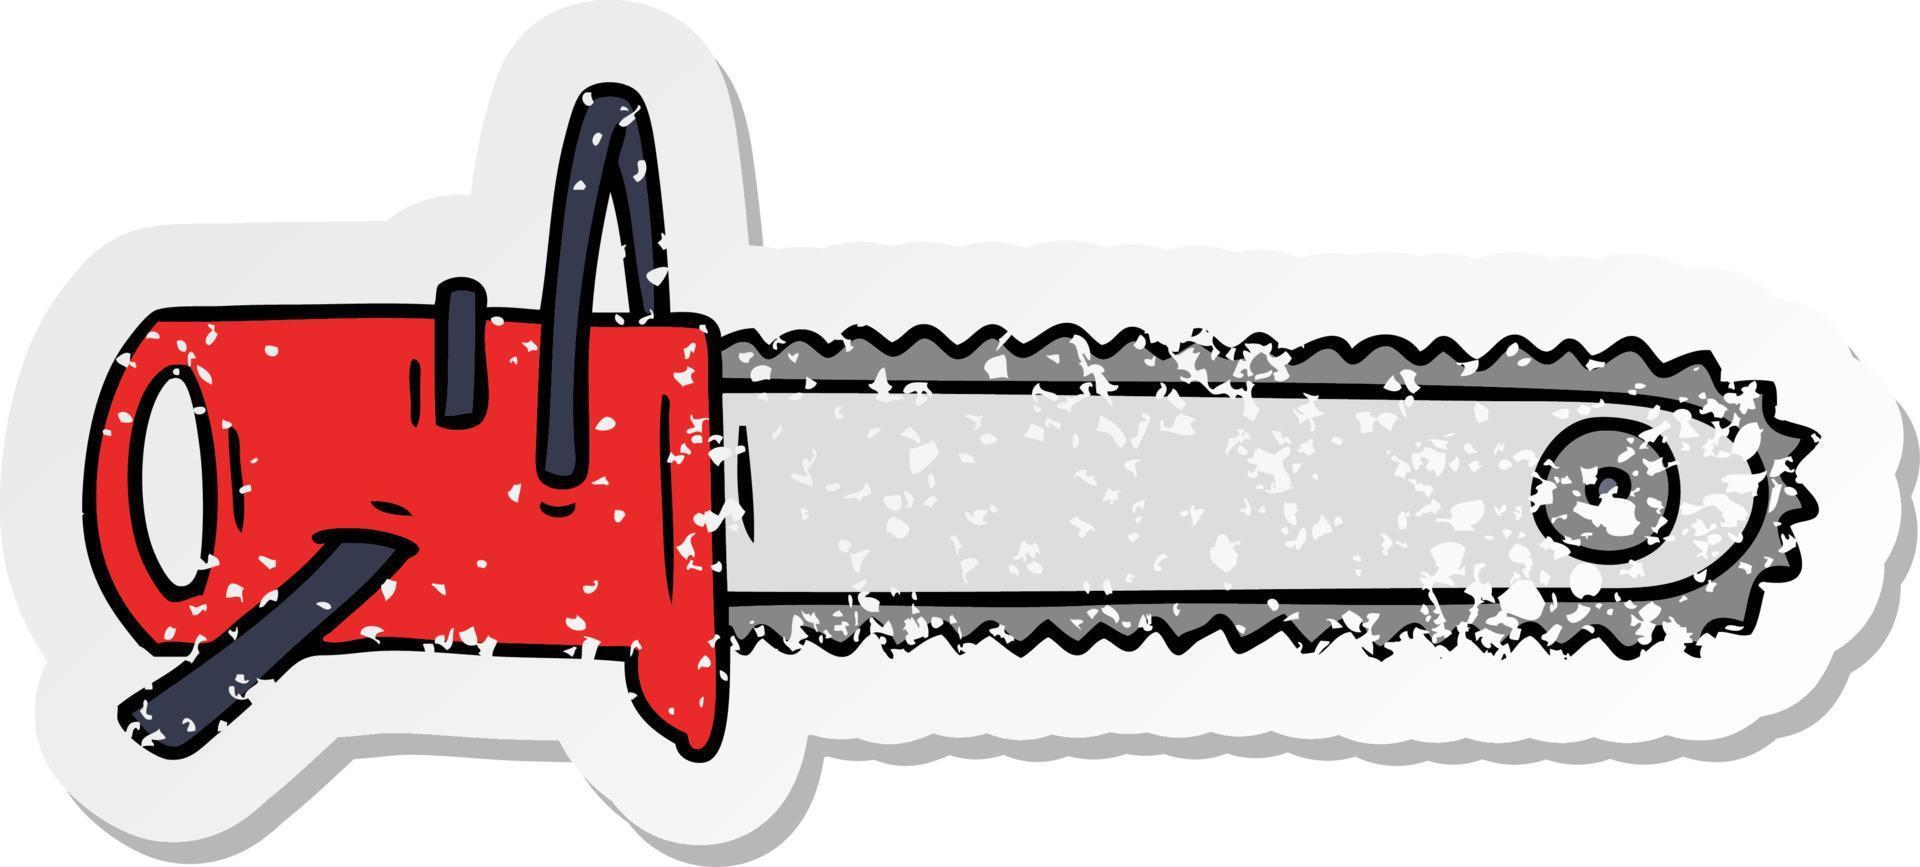 Distressed Sticker Cartoon Doodle für eine Kettensäge vektor